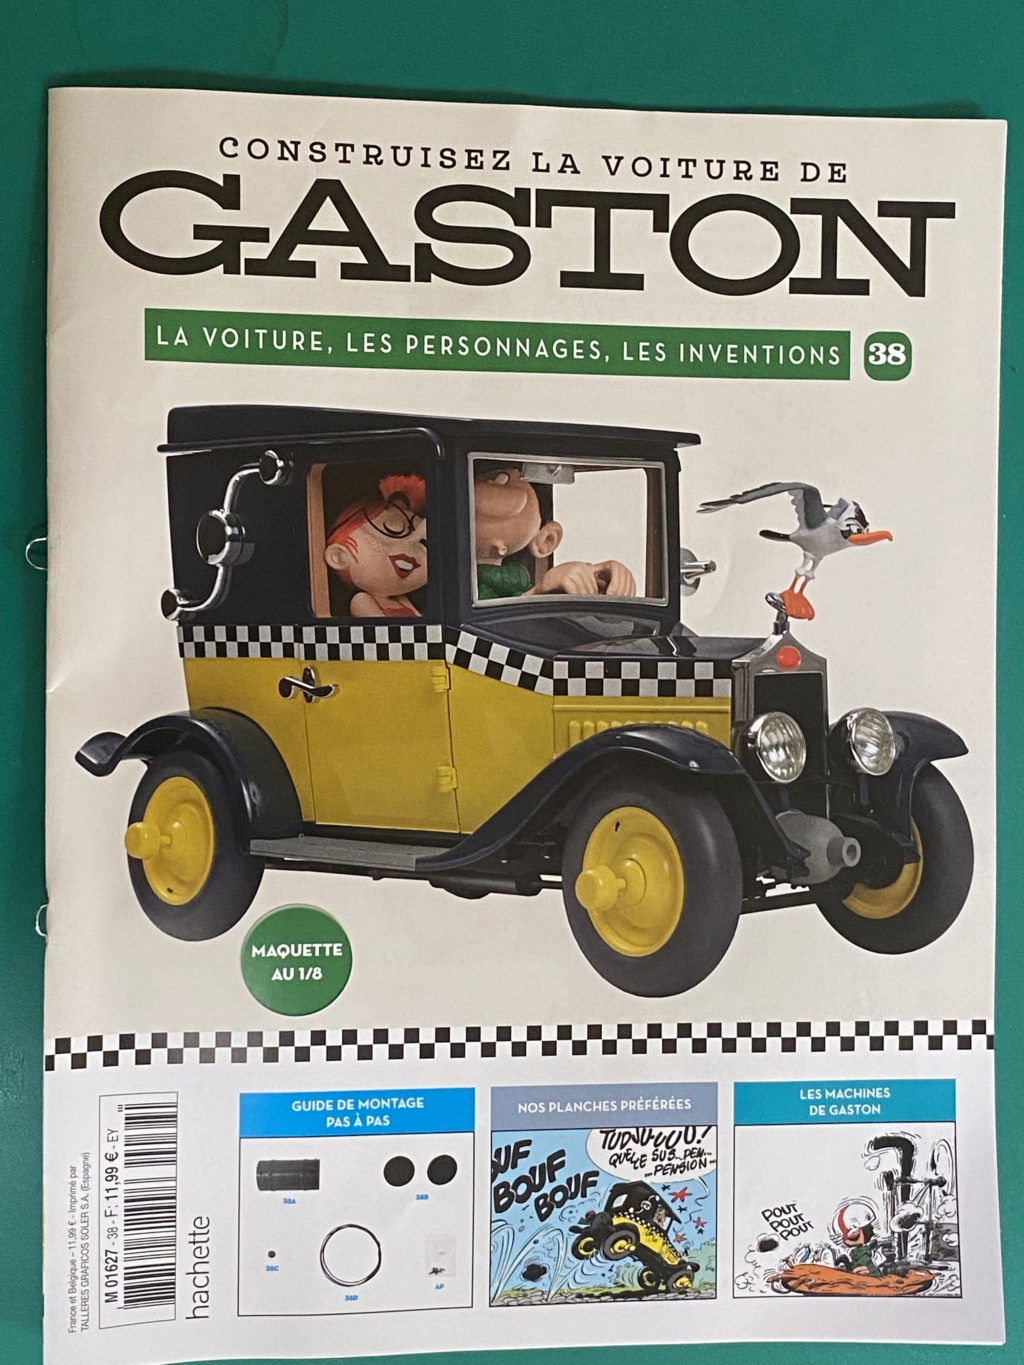 Voiture de Gaston [Hachette 1/8°] de Grenouille1954 - Page 3 A4e60210